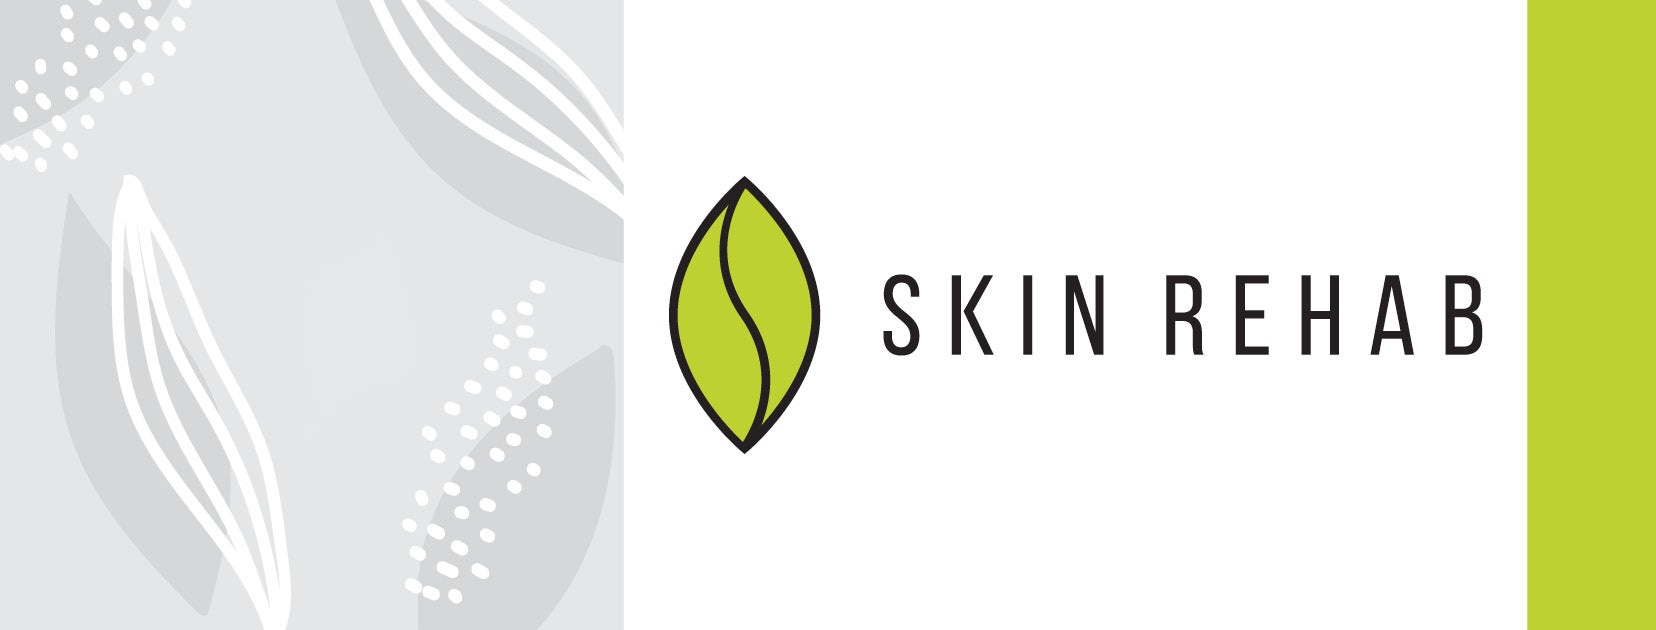 Skin Rehab - Epidermal Growth Factors